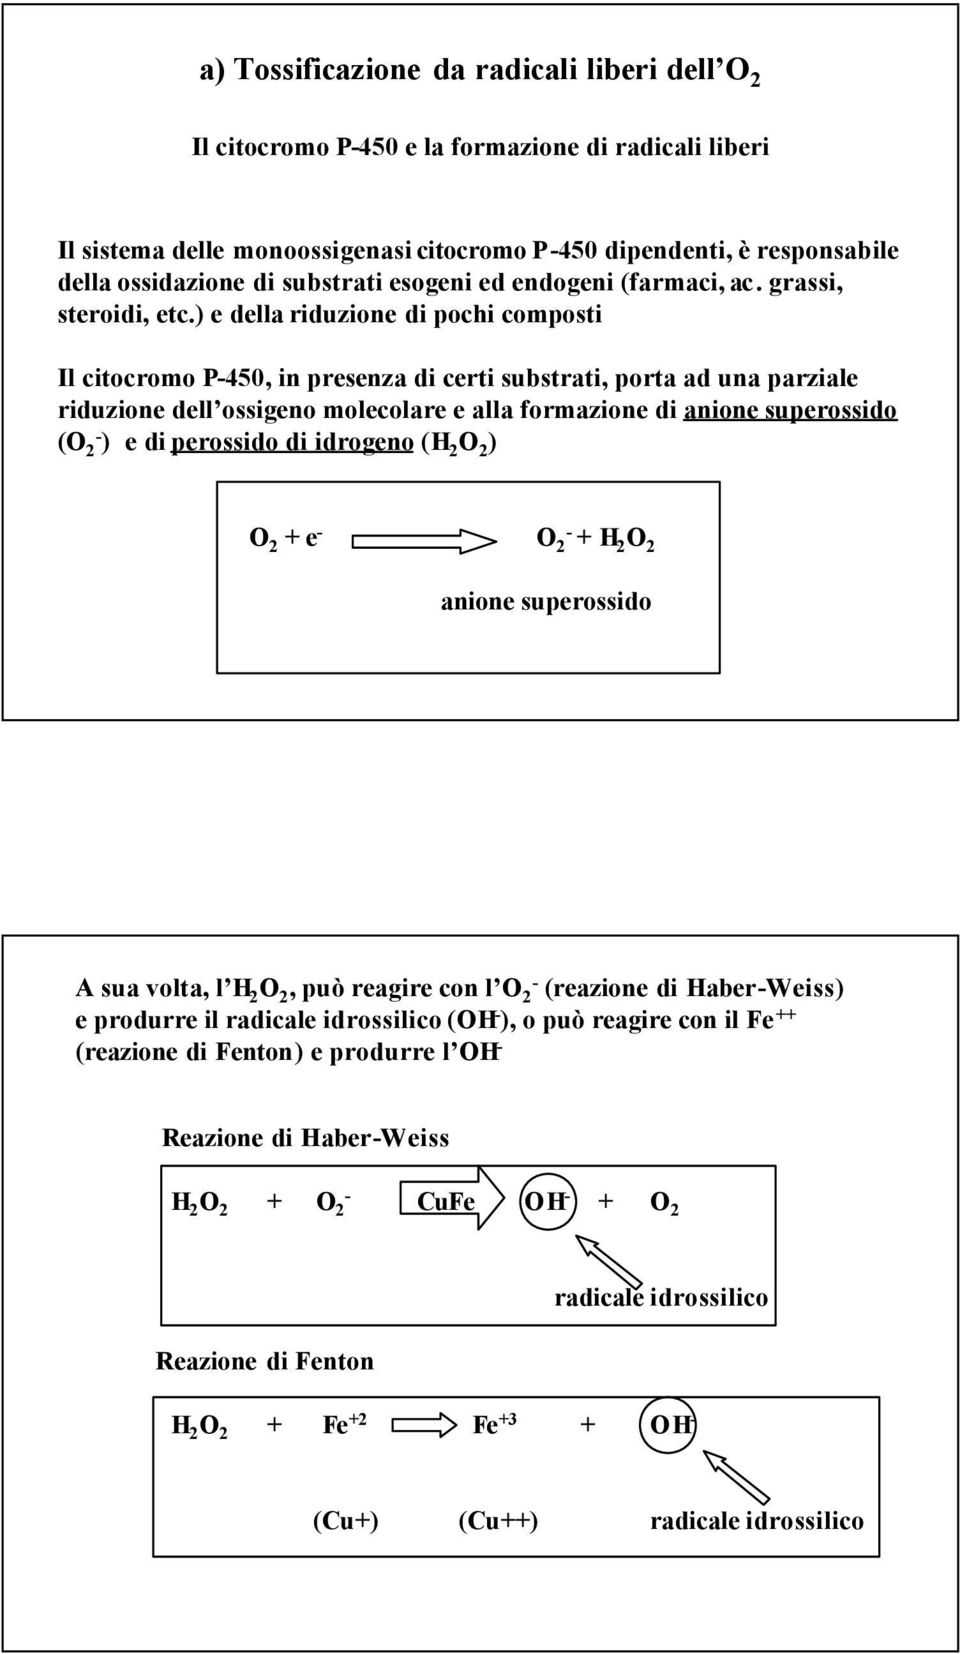 ) e della riduzione di pochi composti Il citocromo P-450, in presenza di certi substrati, porta ad una parziale riduzione dell ossigeno molecolare e alla formazione di anione superossido (O 2 - ) e